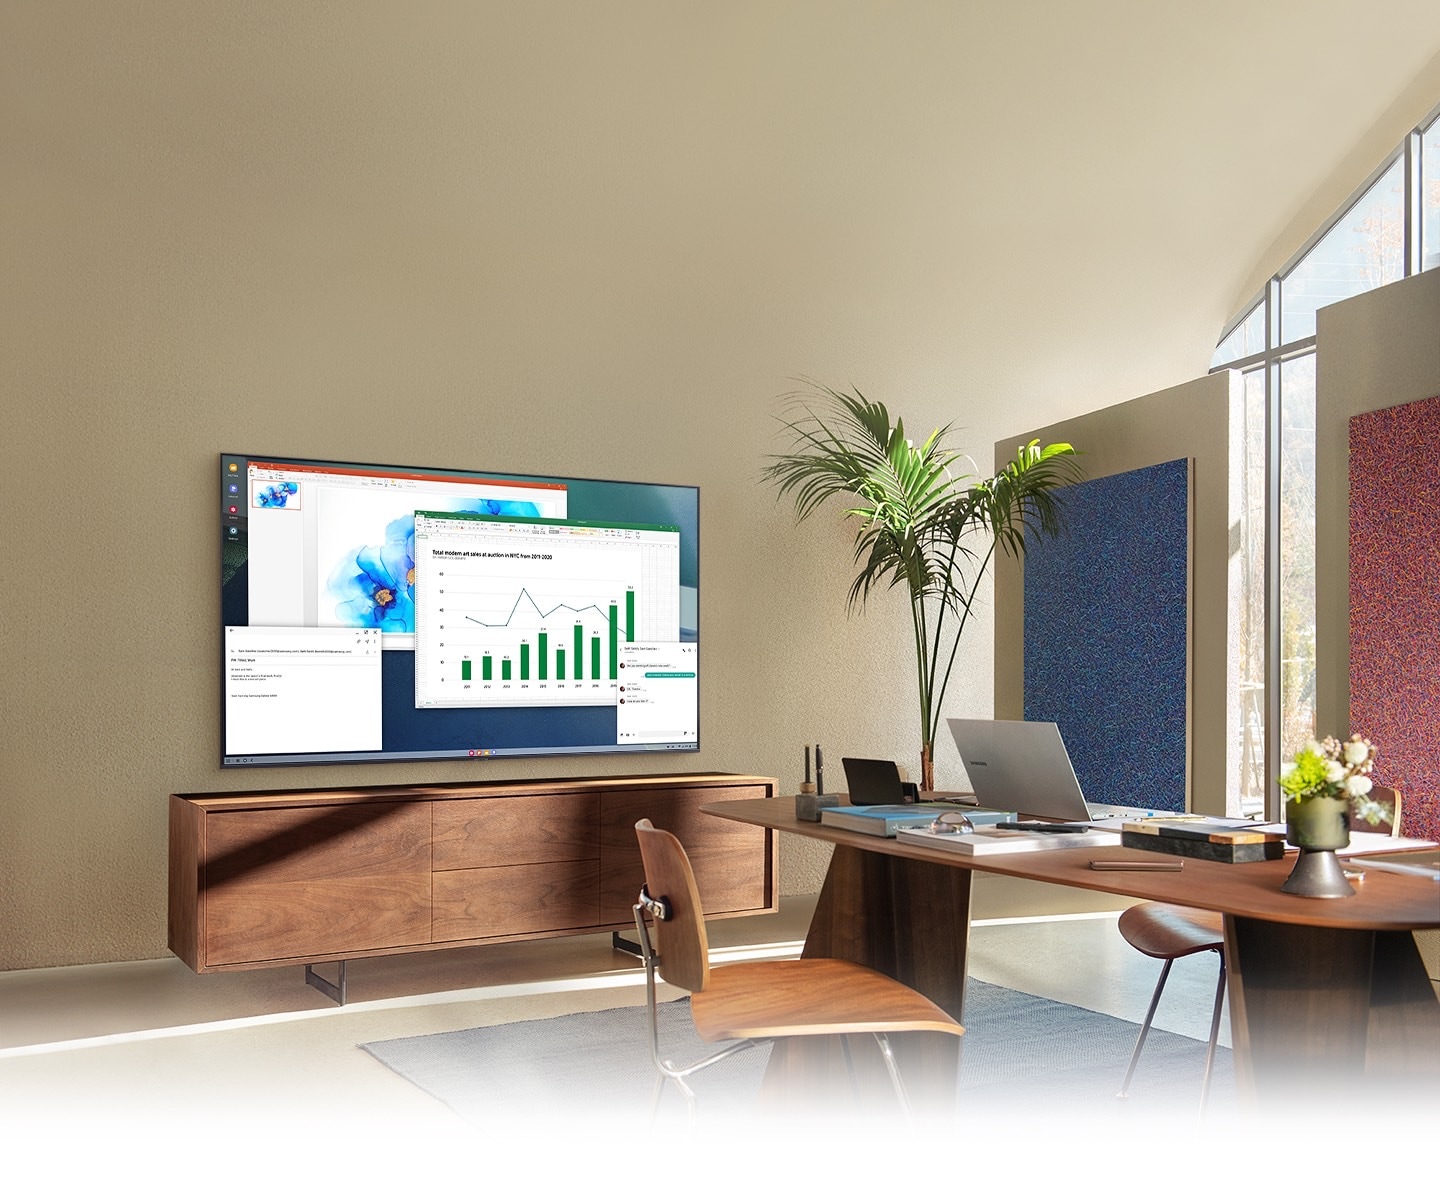 Dans un bureau à domicile, un écran de télévision affiche la fonction PC sur téléviseur qui permet à la télévision domestique de se connecter au PC du bureau.